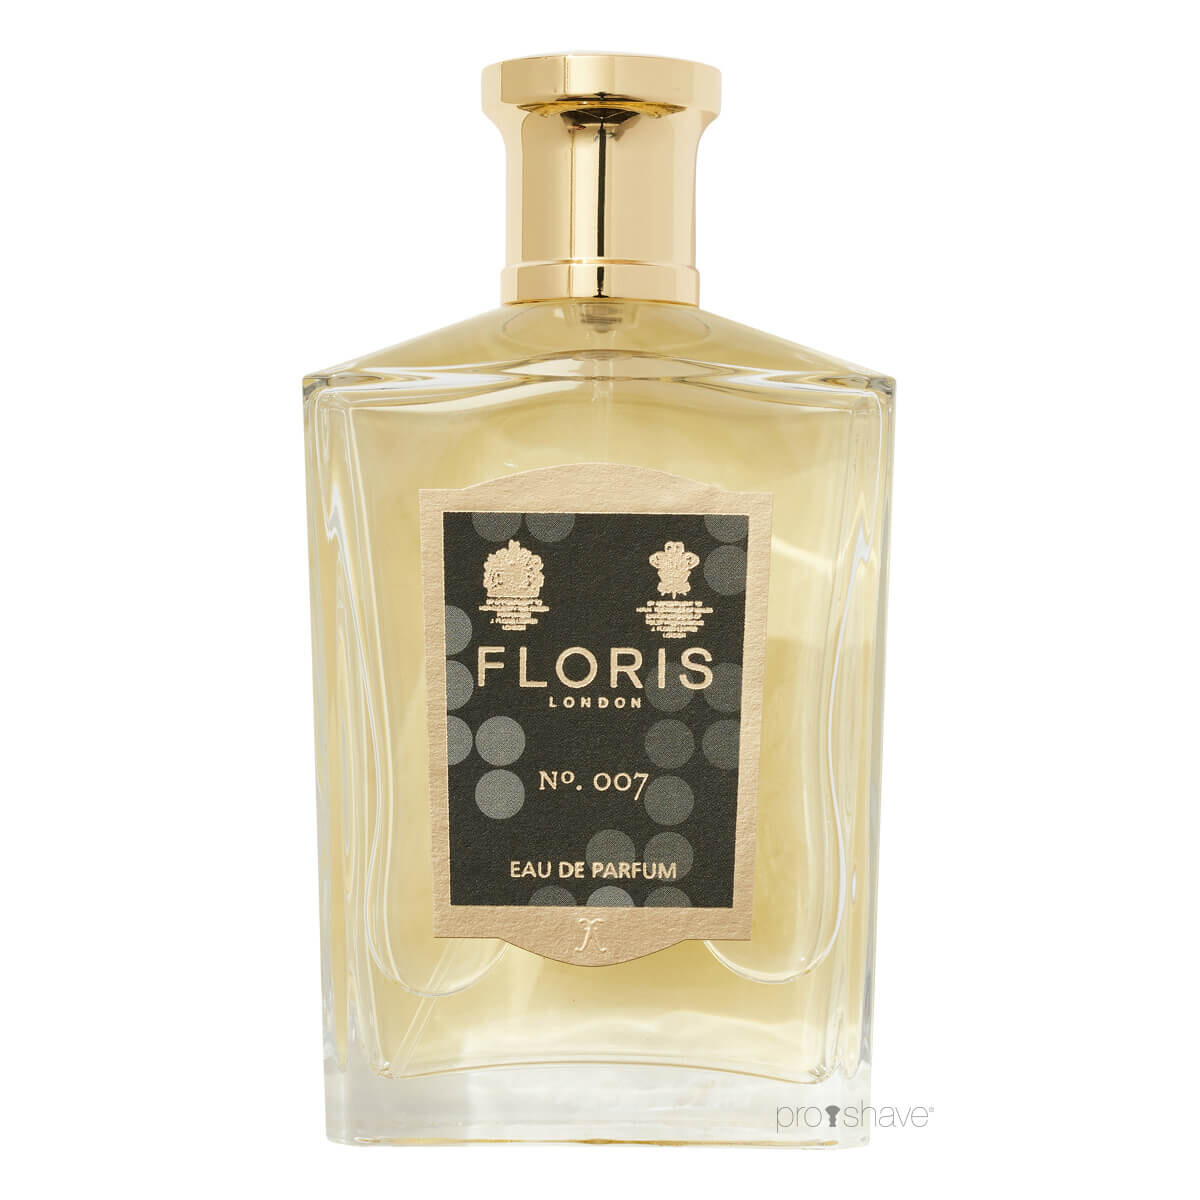 Se Floris No. 007, Eau de Parfum, 100 ml. hos Proshave